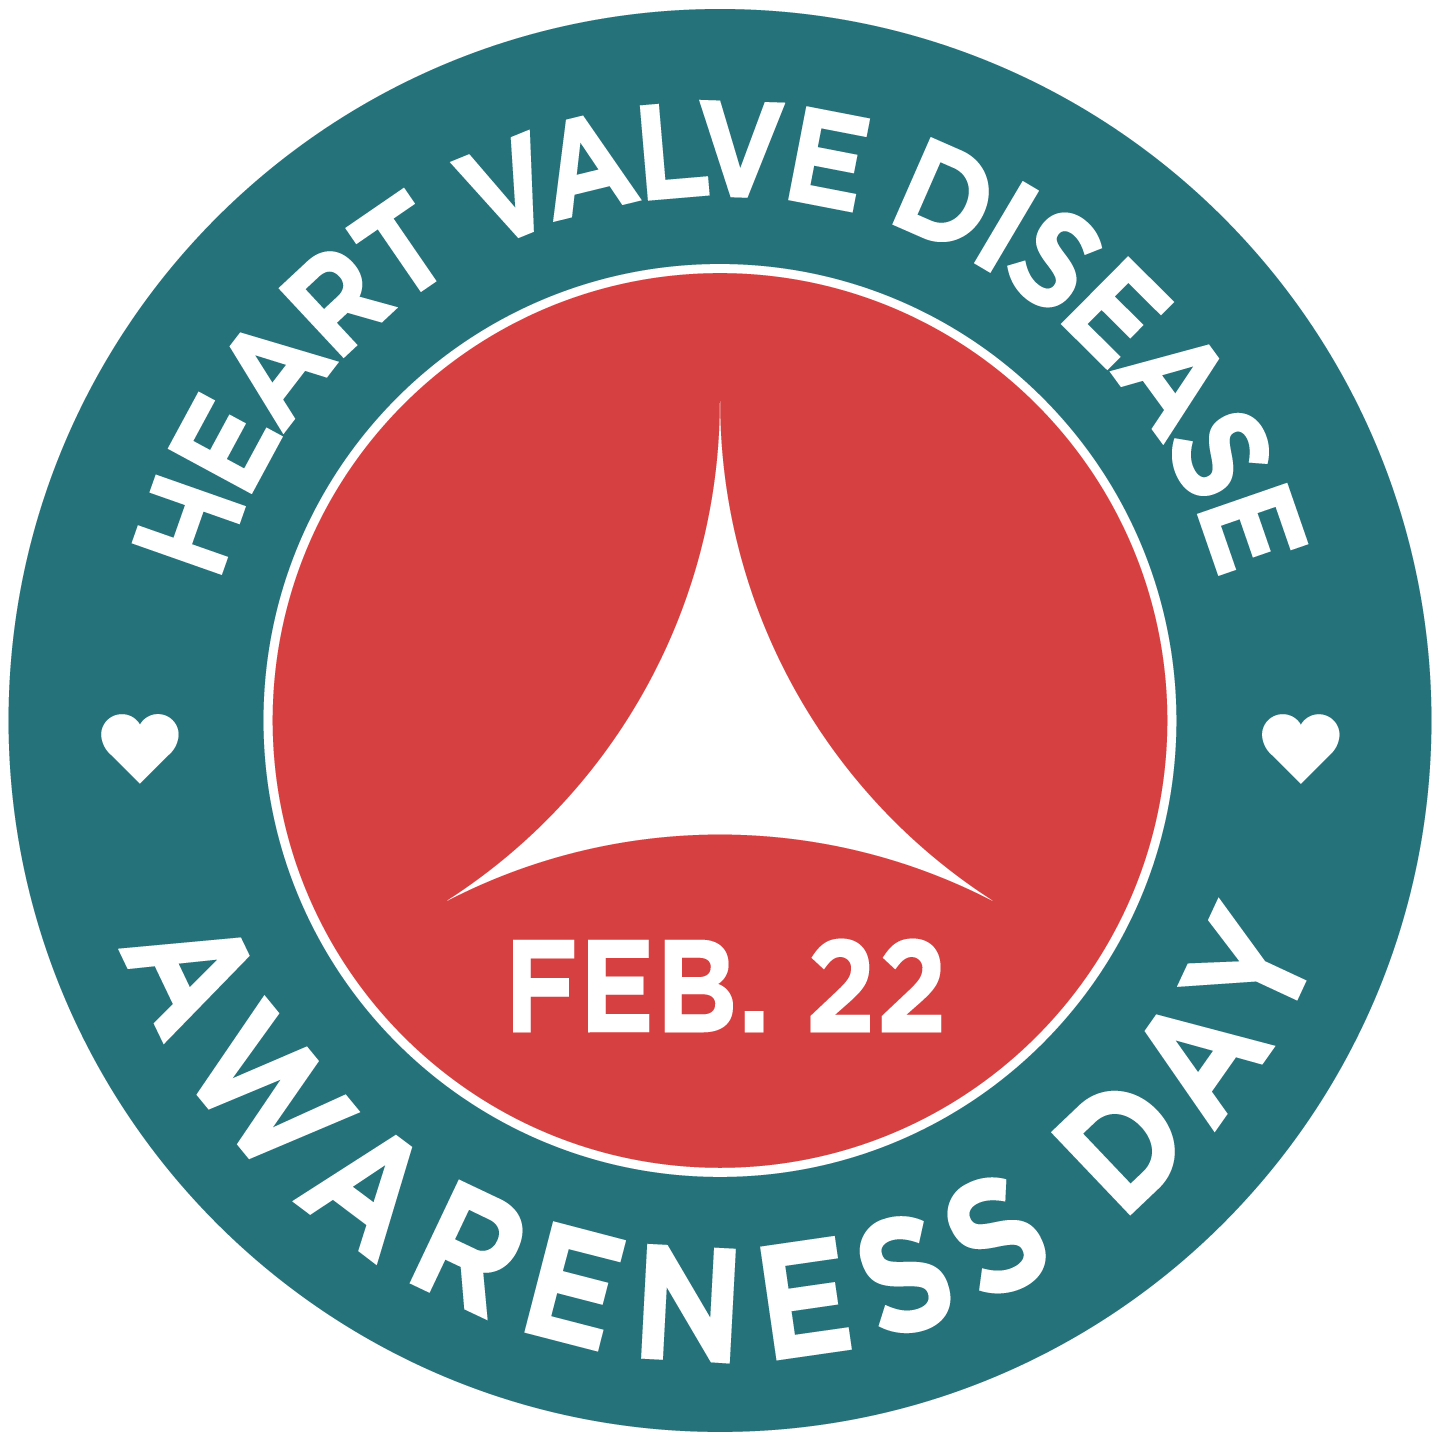 Heart Valve Disease Awareness Day | American Heart Association